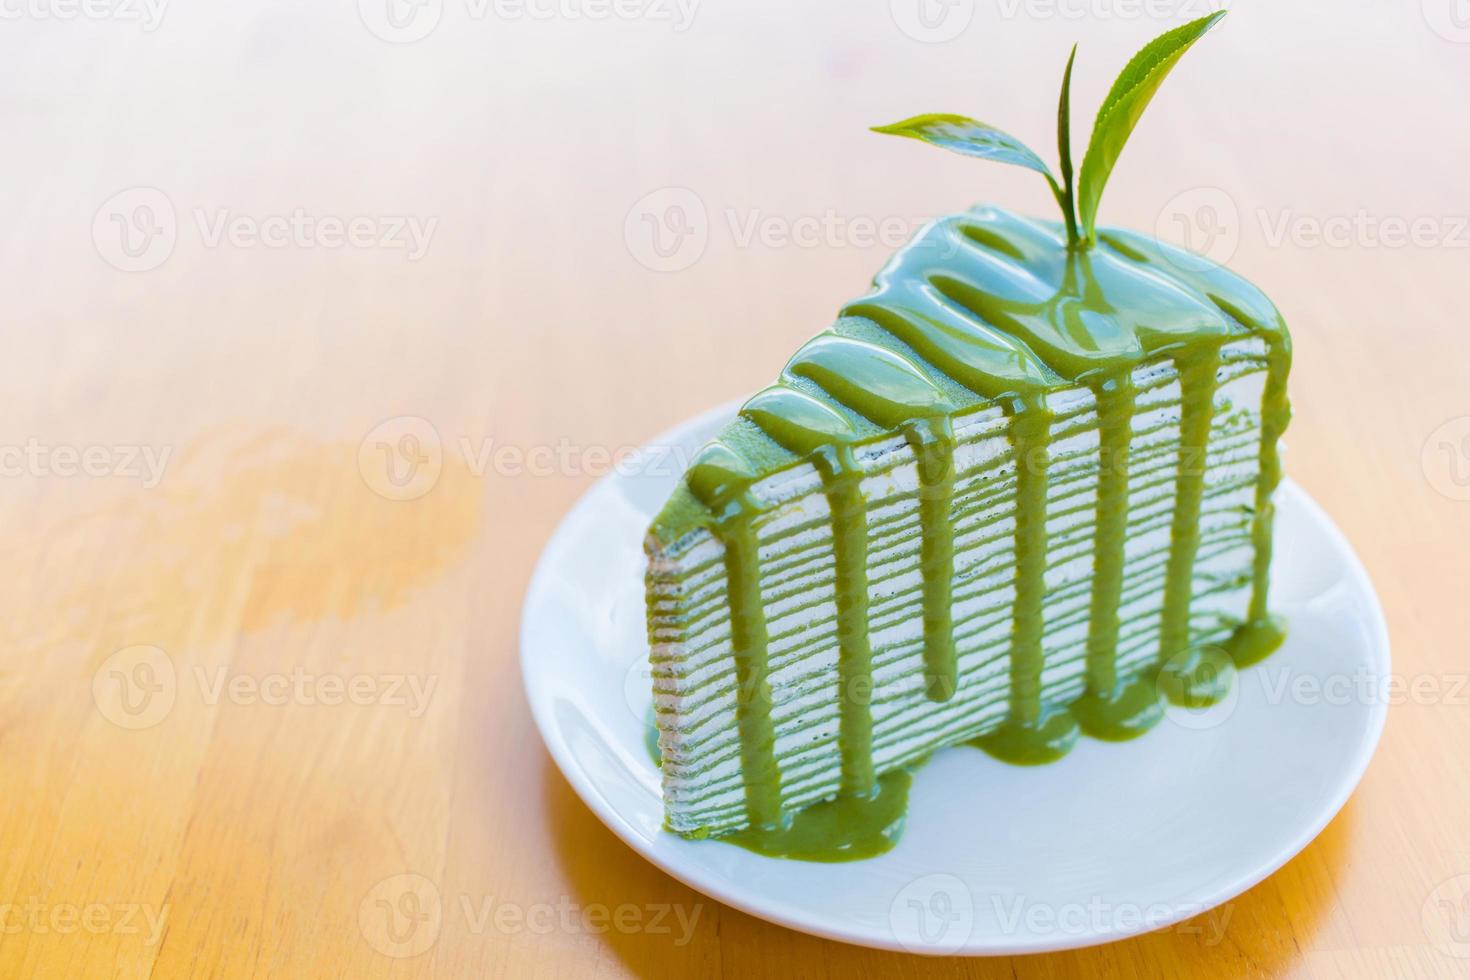 matcha groene thee crêpe cake die bovenop met matcha saus en versierd met vers groen theeblad op een wit bord op een houten tafel wordt gezet. foto